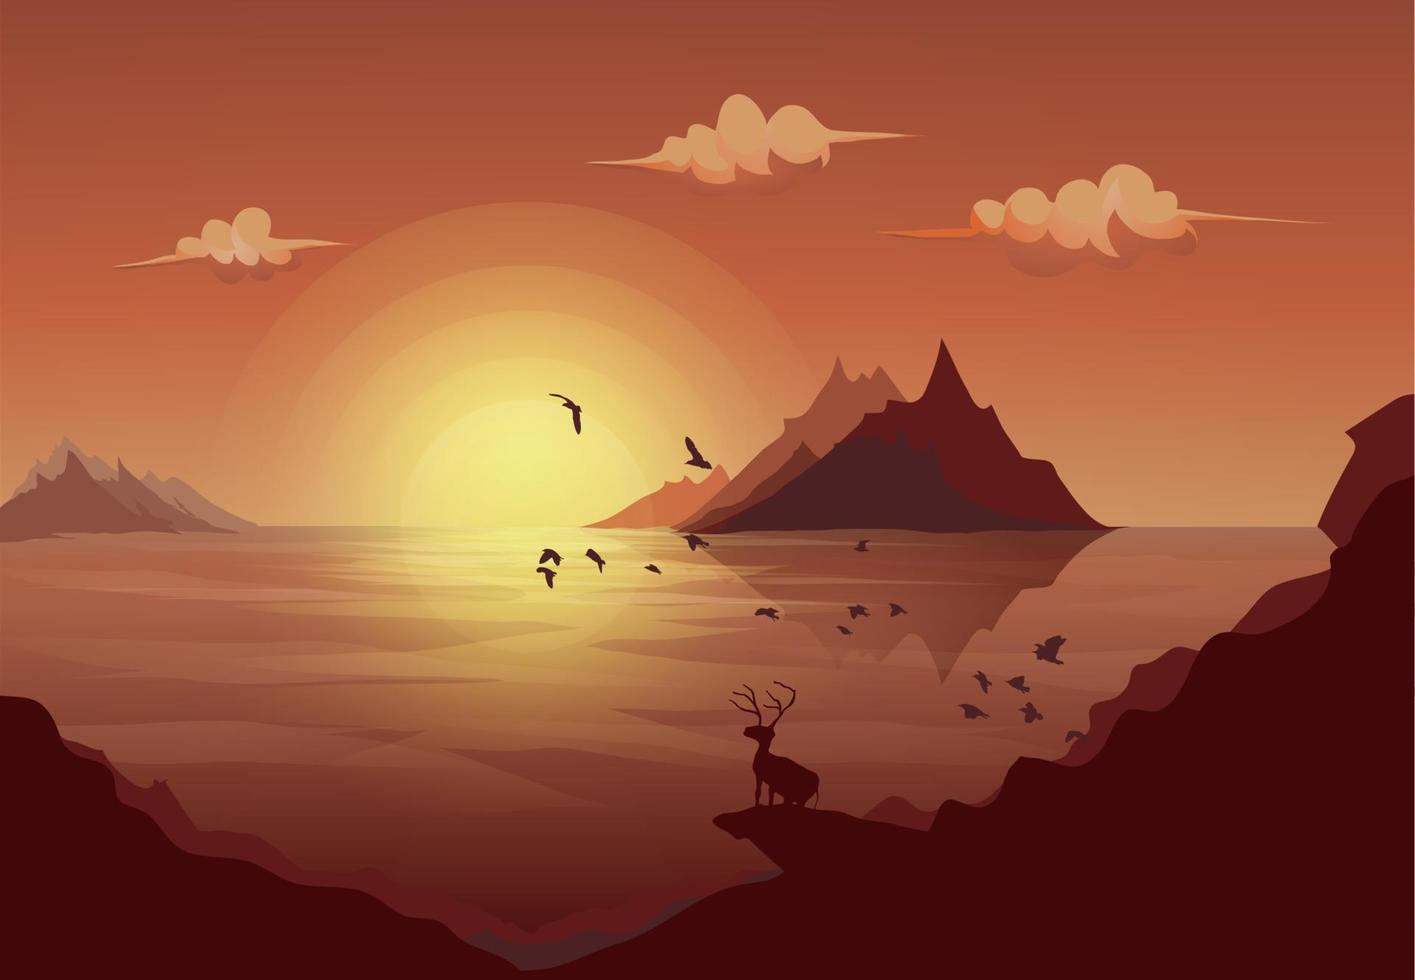 ciervo parado en la roca mirando el paisaje de la isla de montaña mar con sol y nubes a lo largo de la bandada de pájaros voladores vector